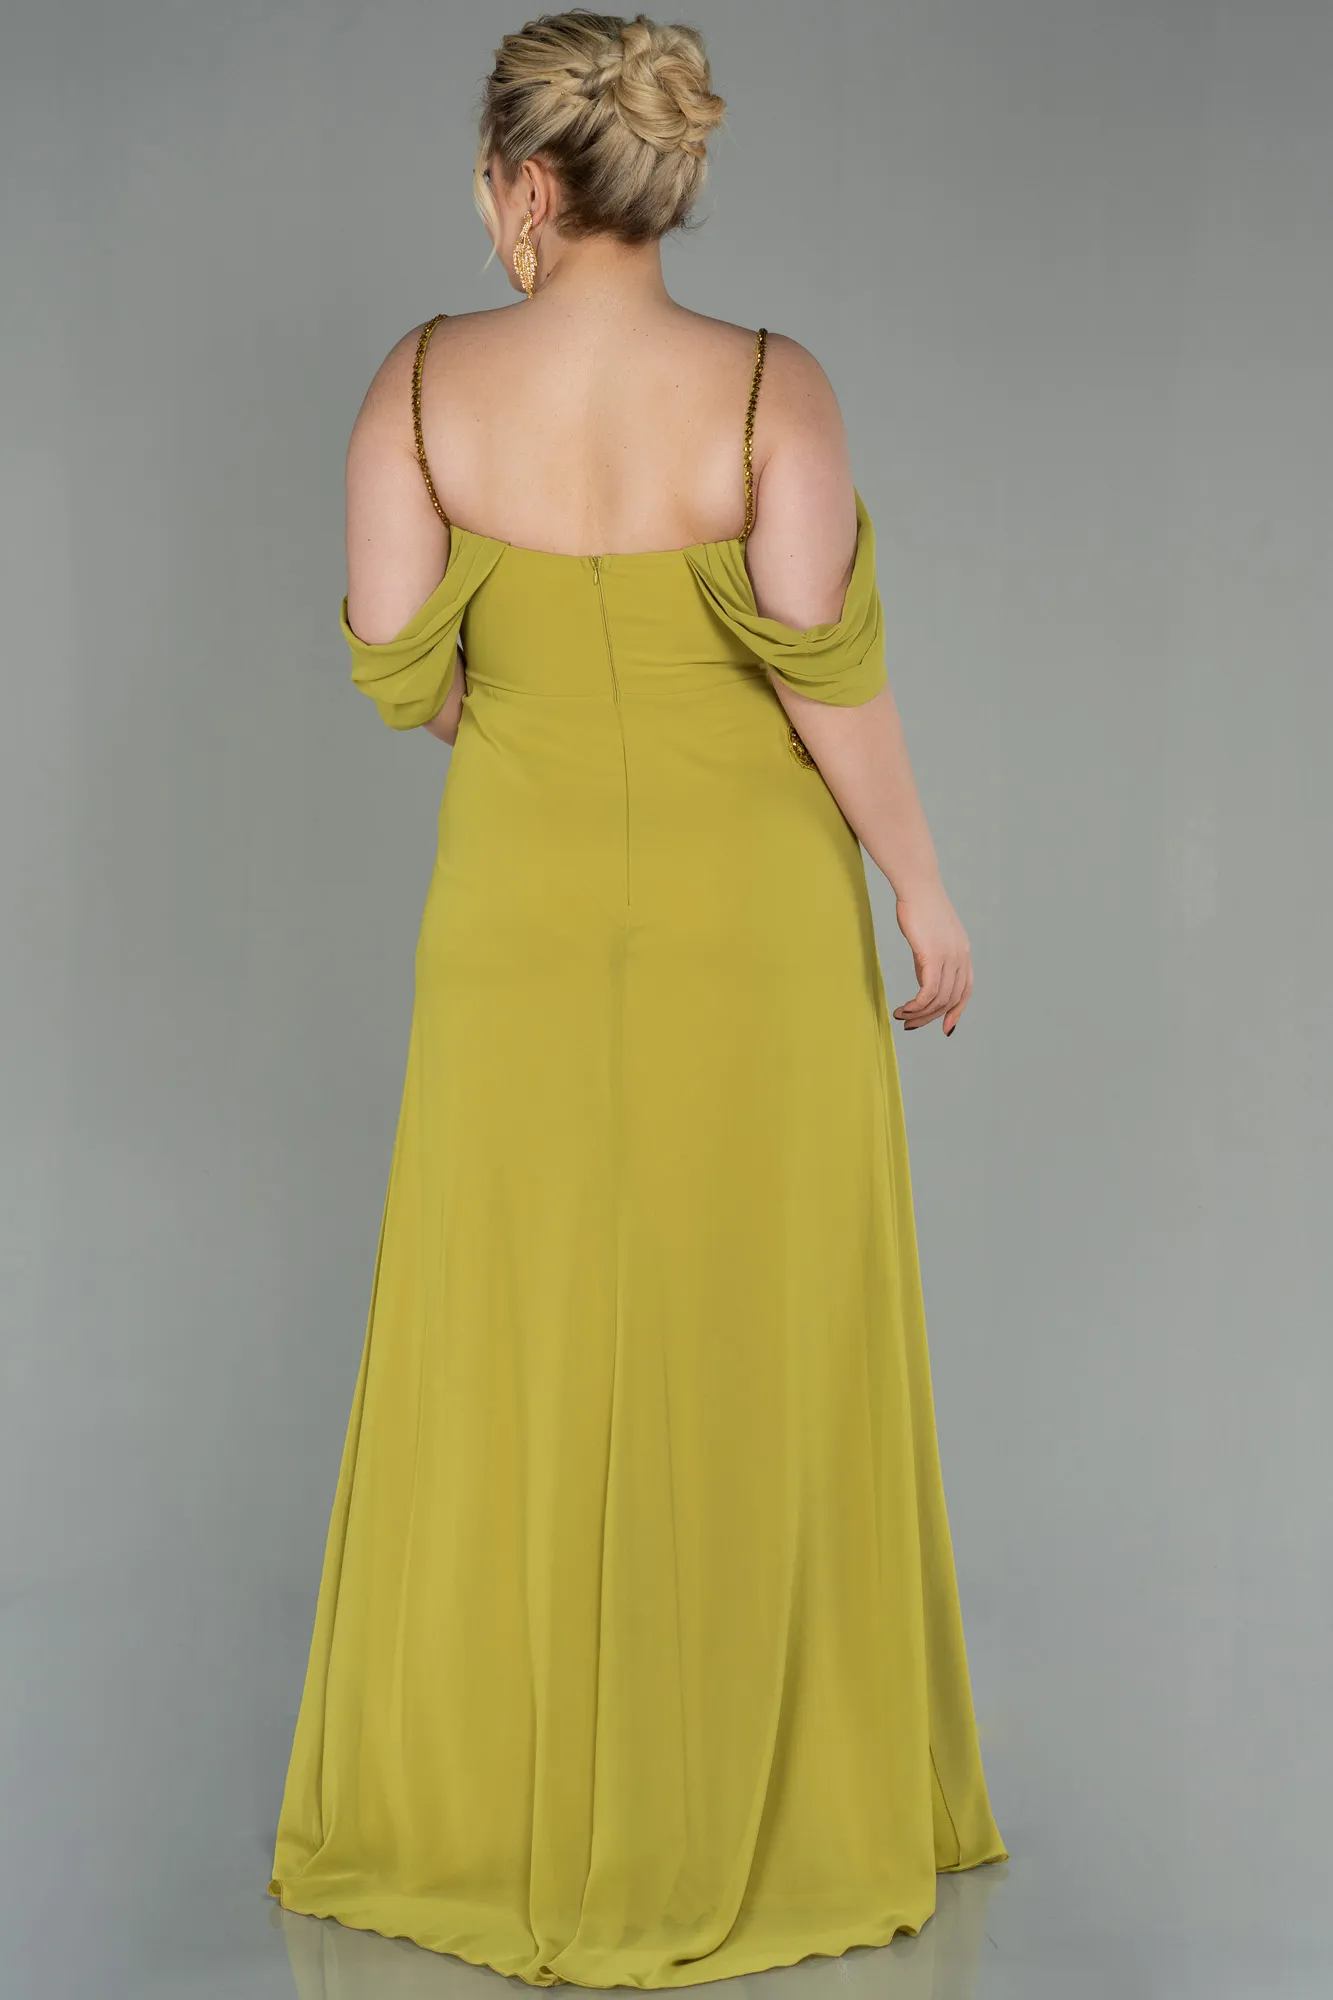 Pistachio Green-Long Chiffon Plus Size Evening Dress ABU2929